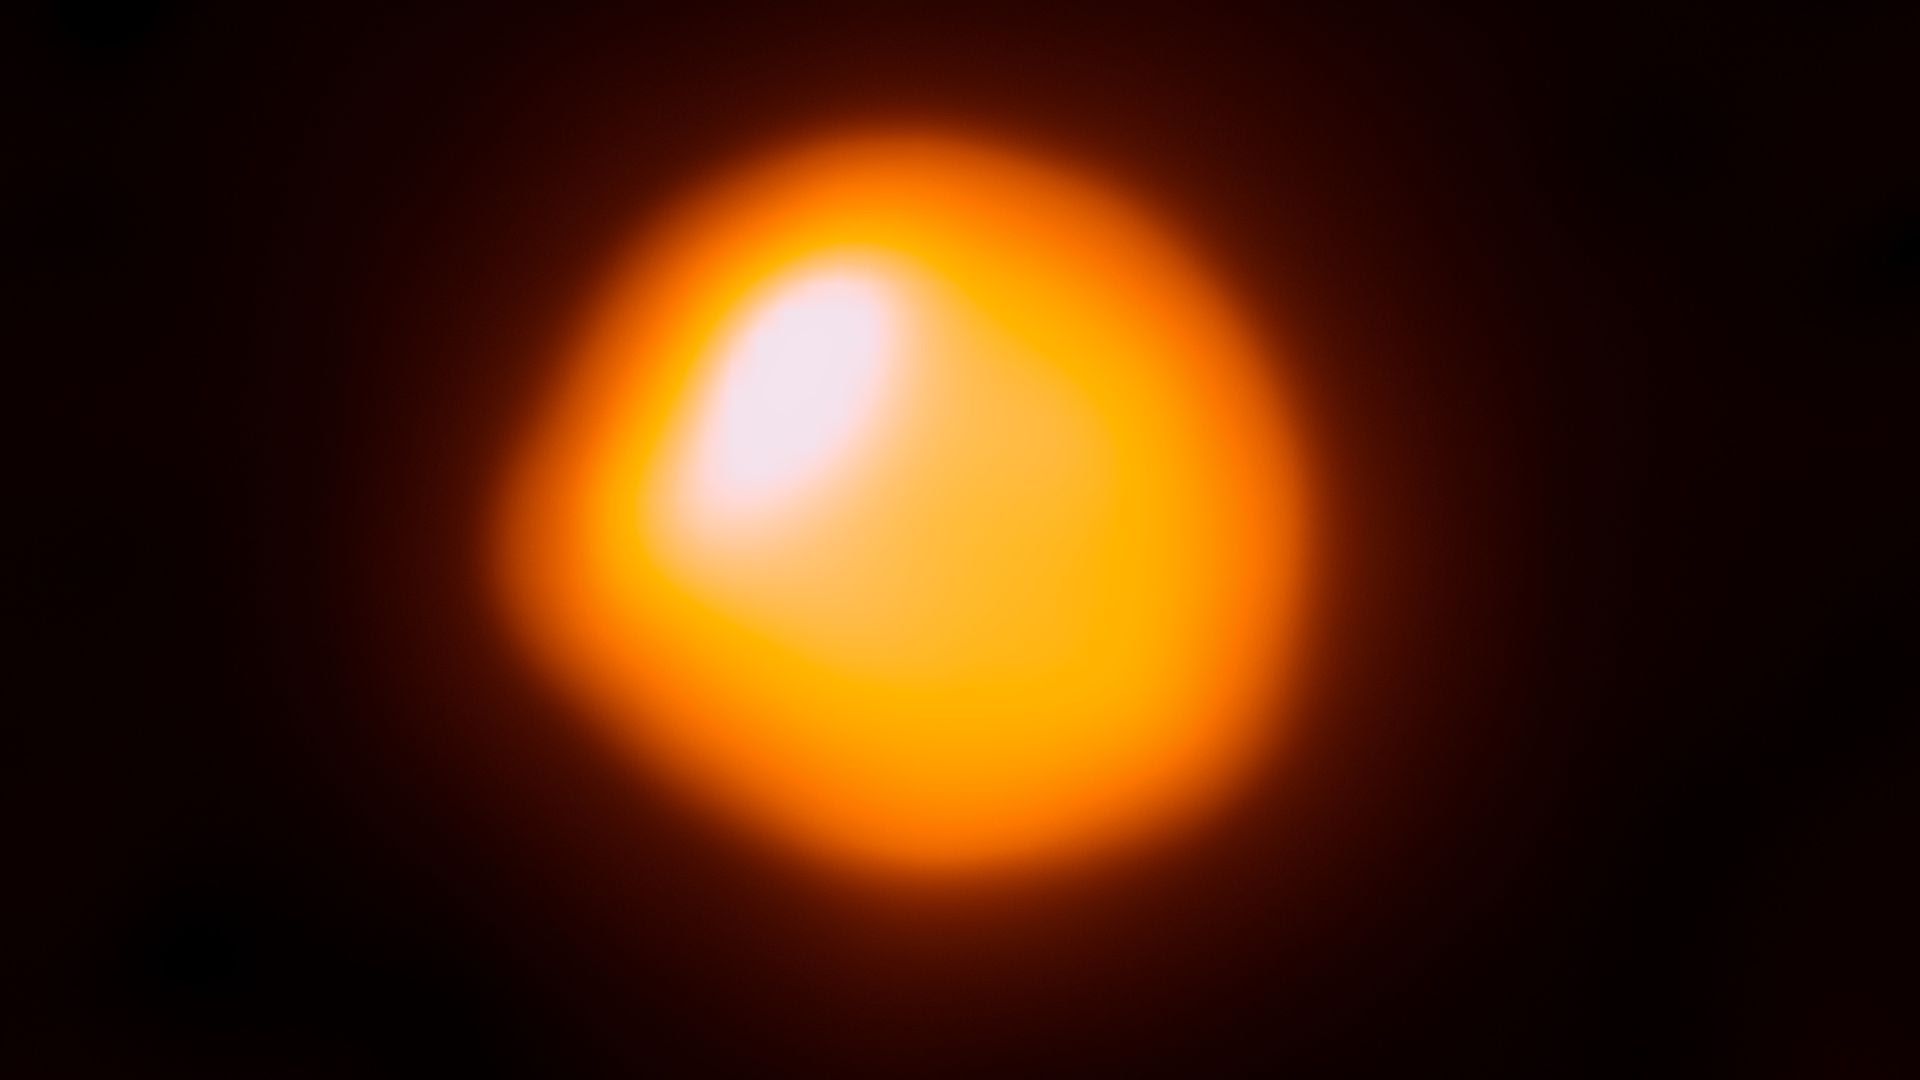 Betelgeuse as seen by ALMA. Photo: ESO/NAOJ/NRAO/E. O’Gorman/P. Kervella